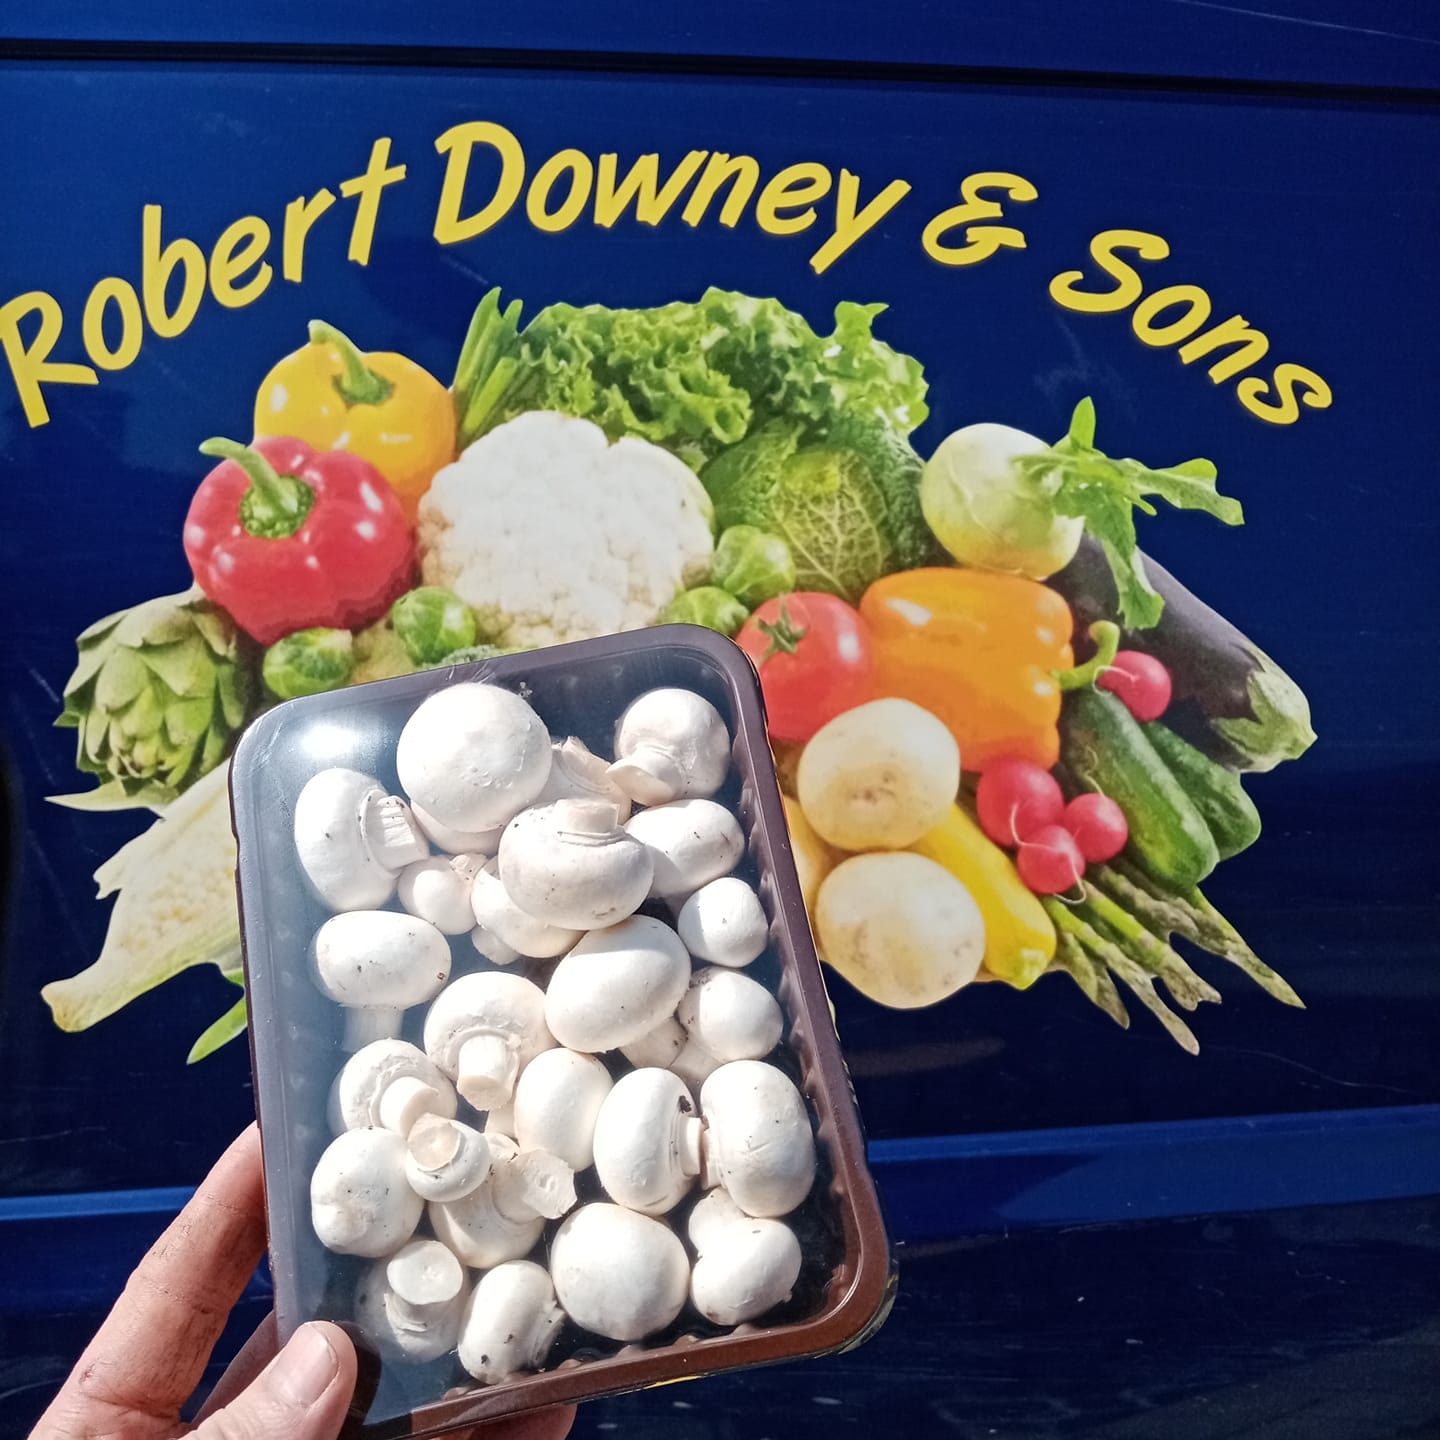 Robert Downey & Sons Fresh Fruit & Vegetables